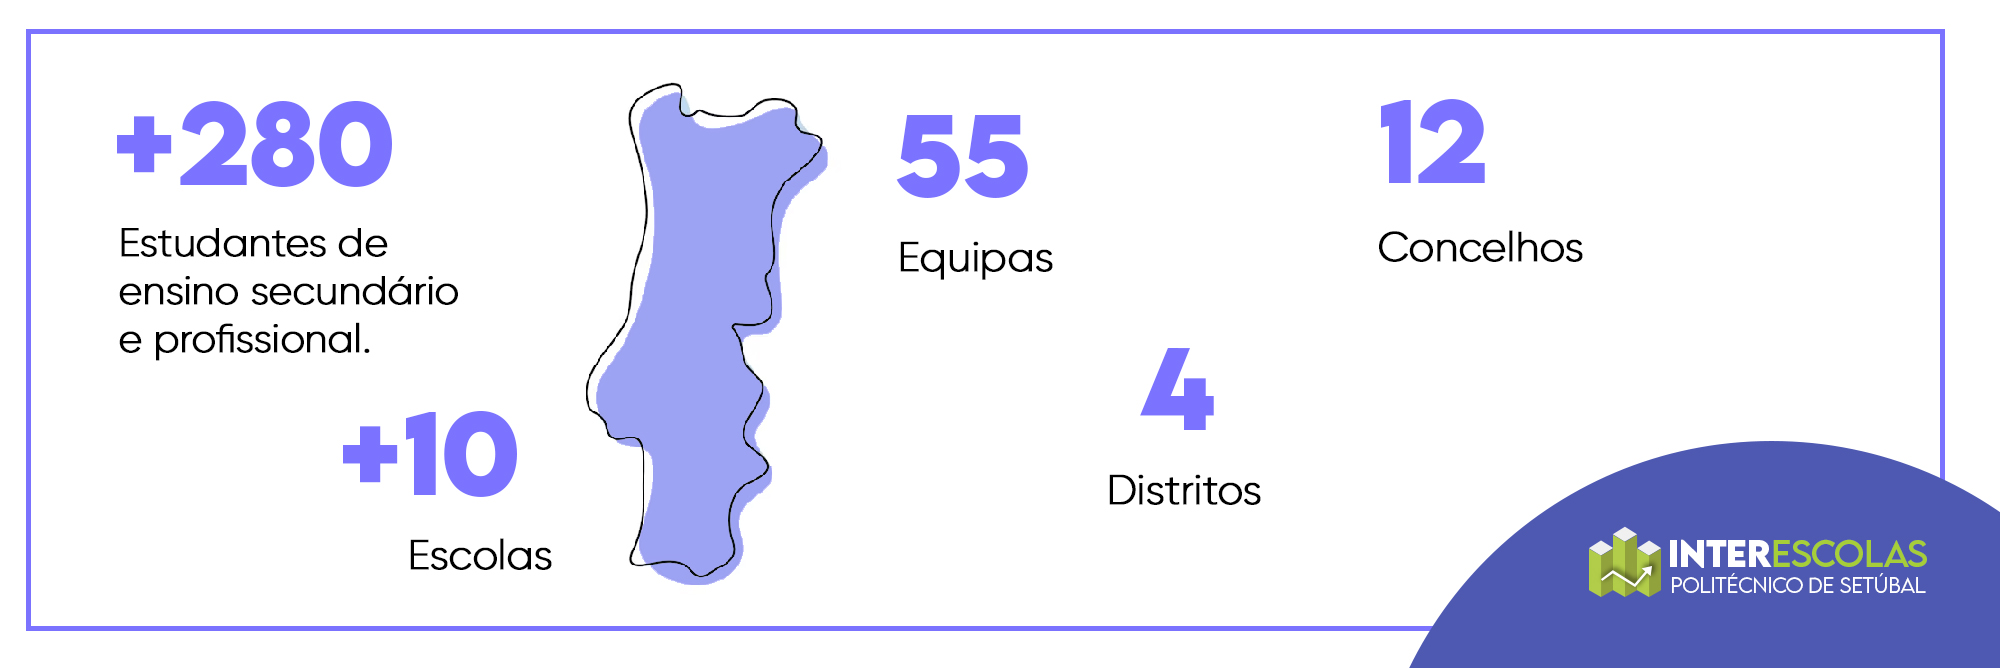 +280 estudantes de ensino secundário e profissional; +10 escolas; 55 equipas; 4 distritos; 12 concelhos